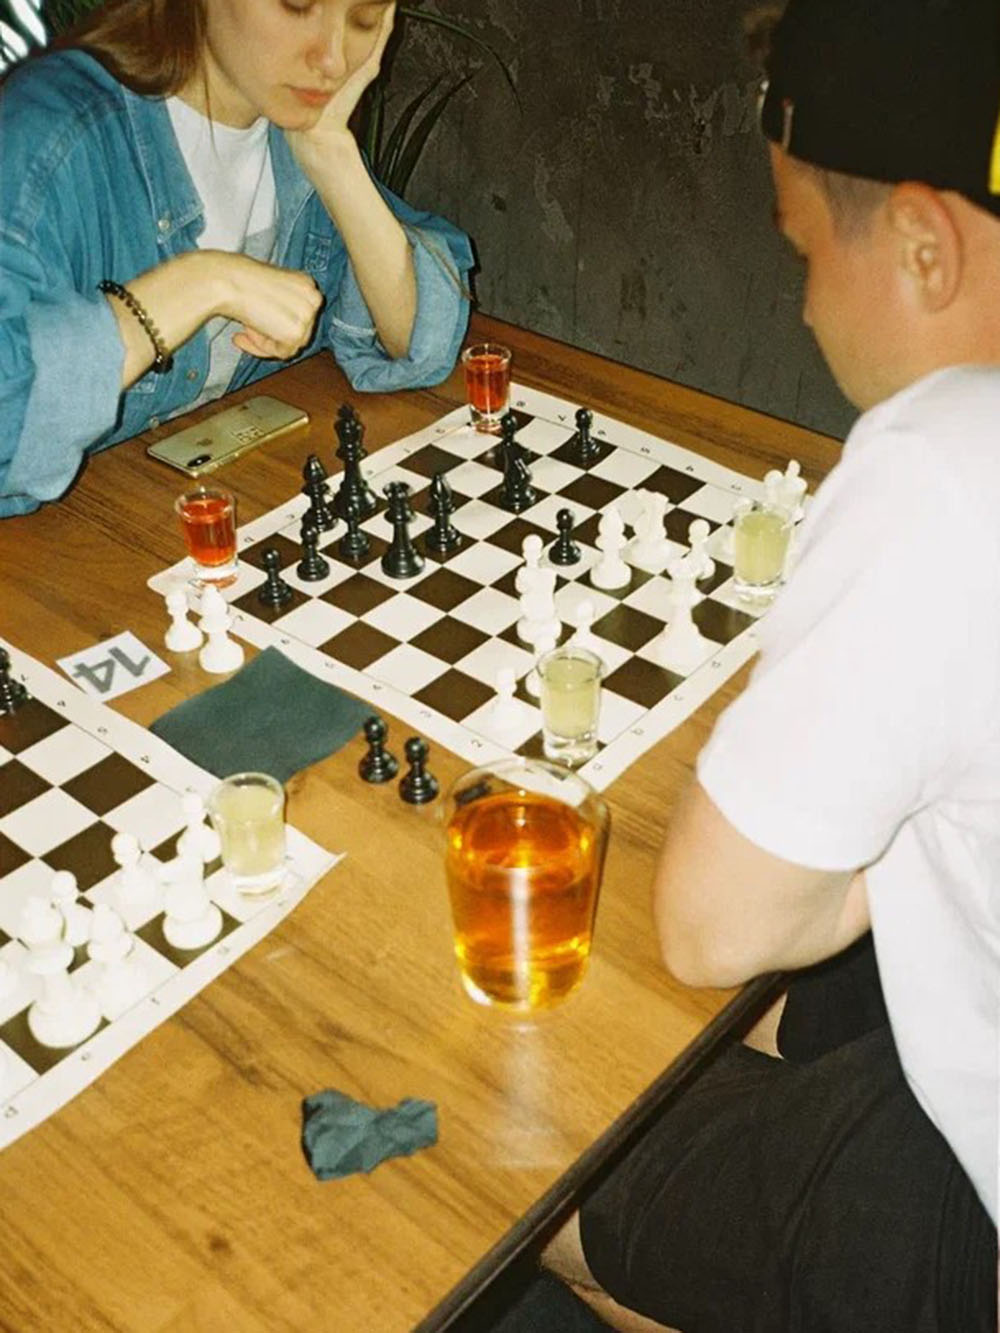 Шахматы в баре — необычный формат, но гостям понравилось